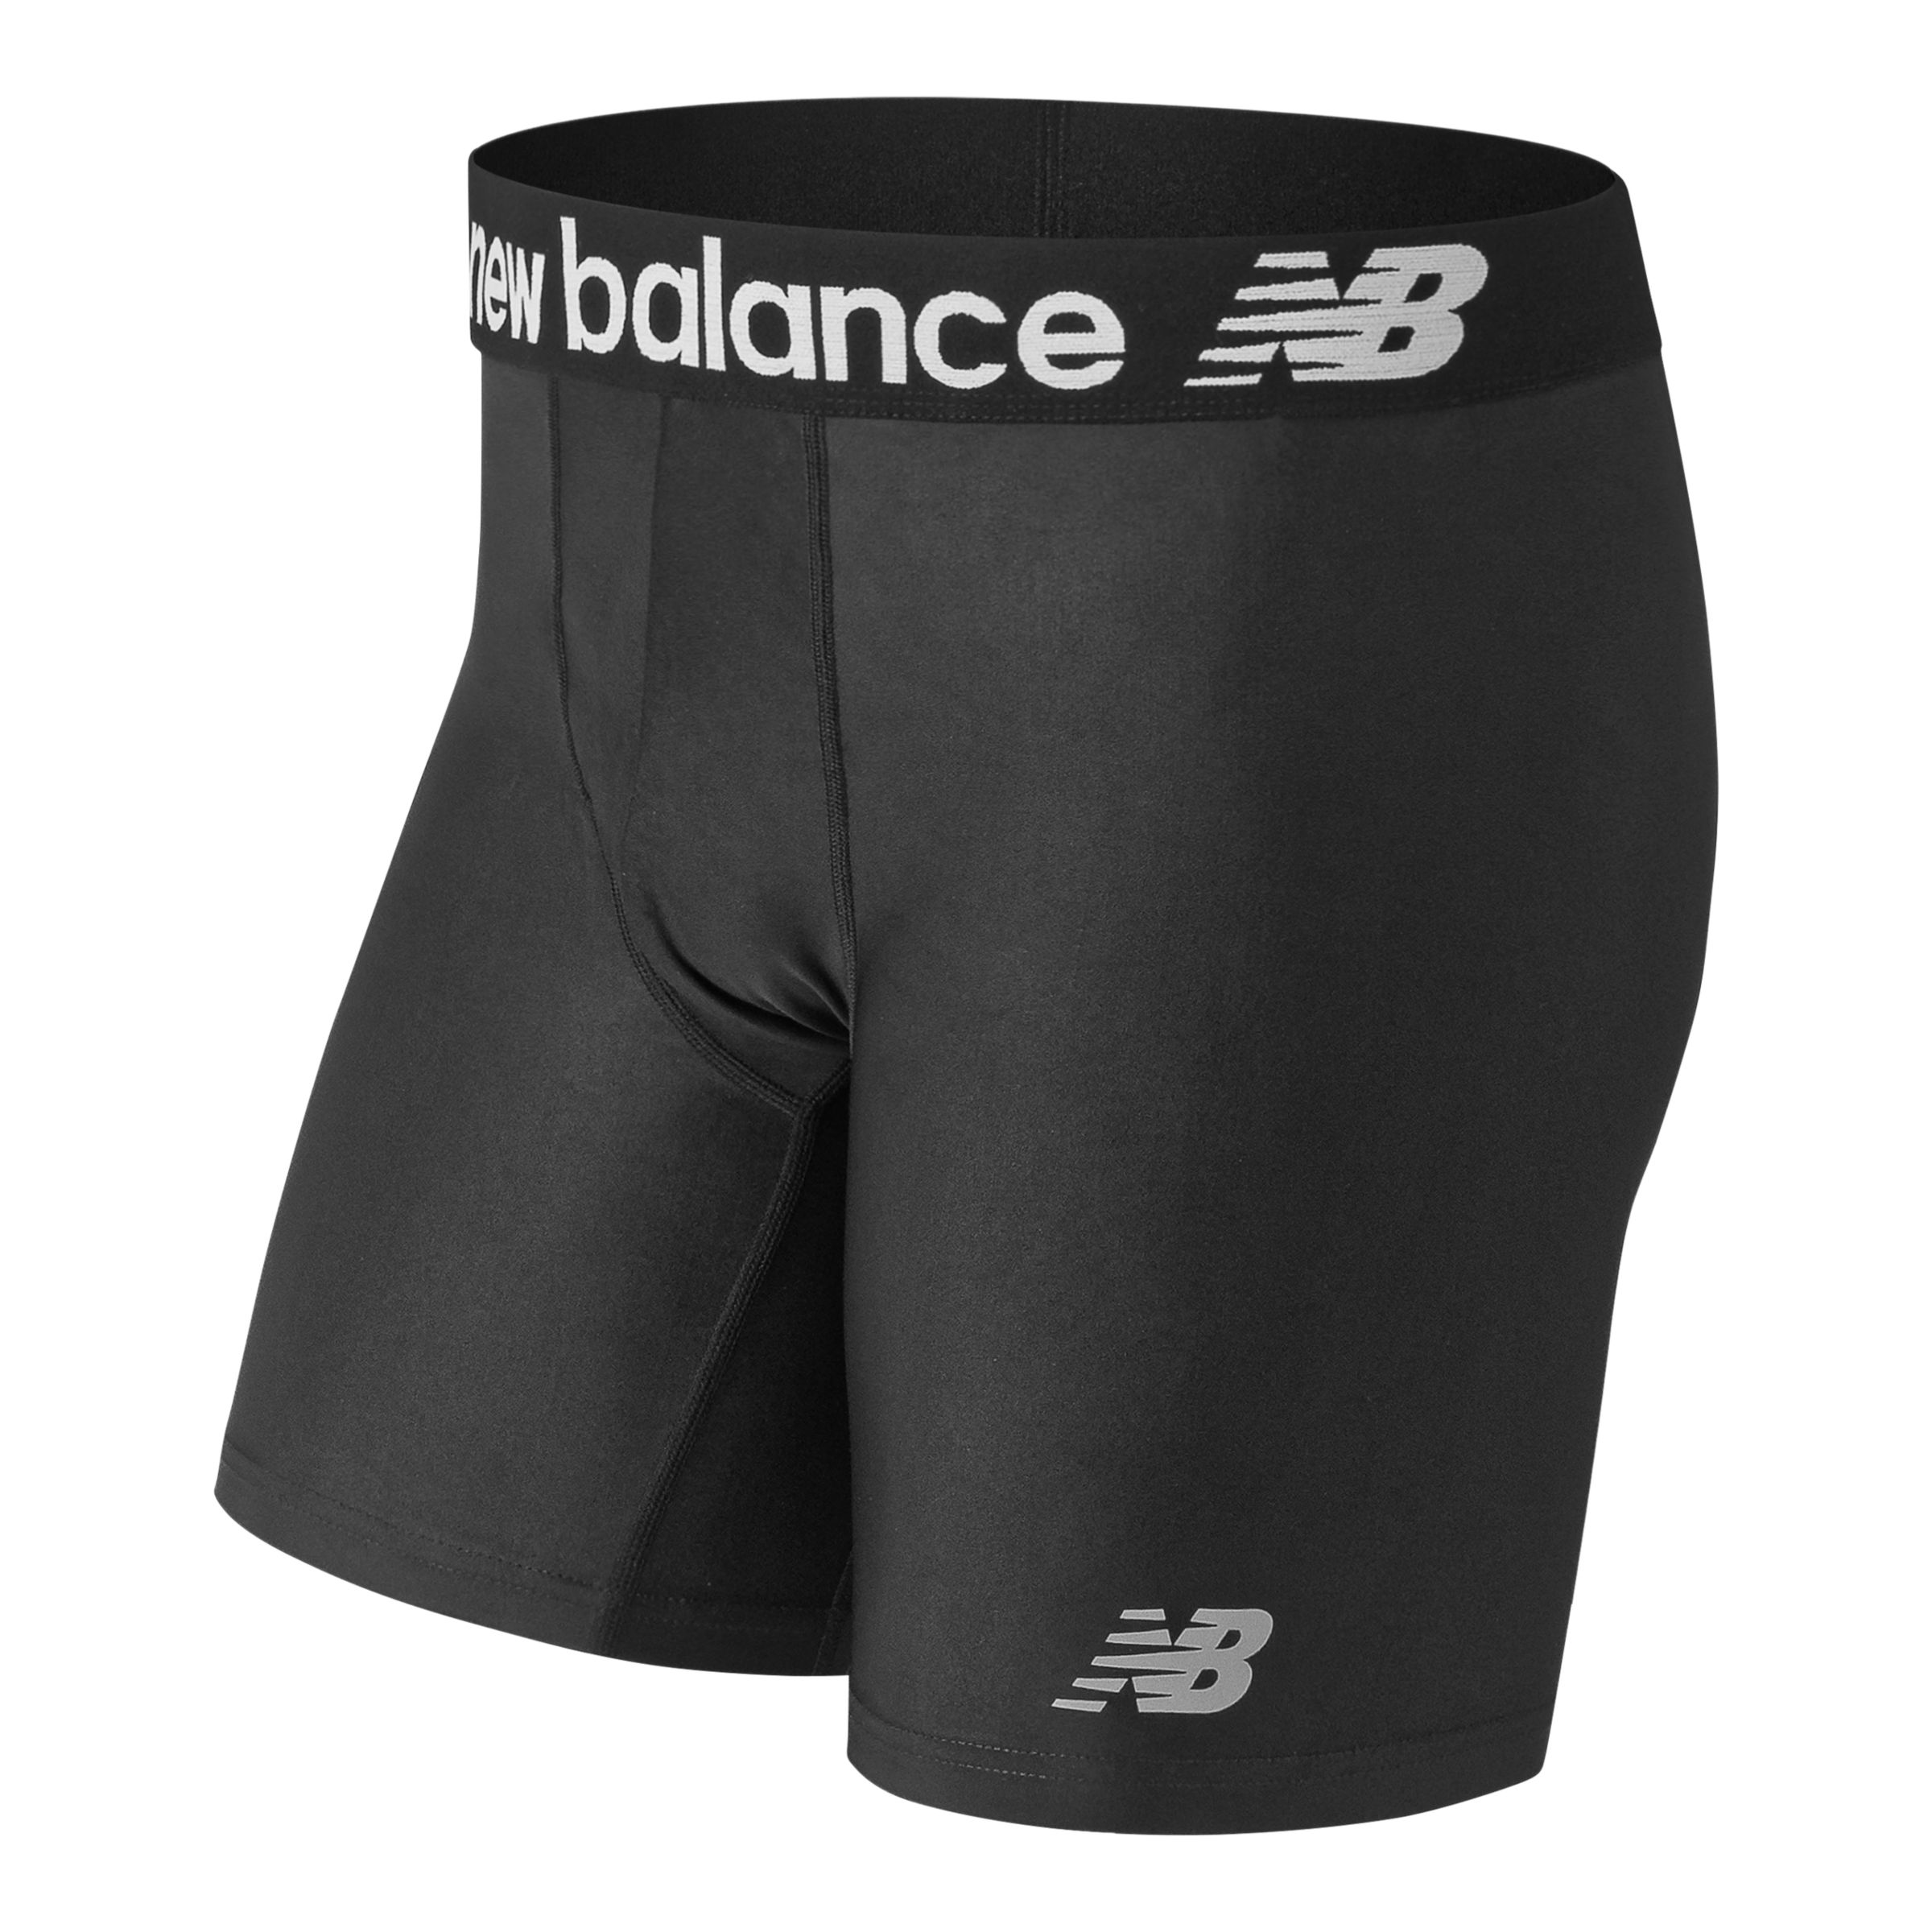 New Balance Men's Premium Performance 6 Boxer Brief Underwear